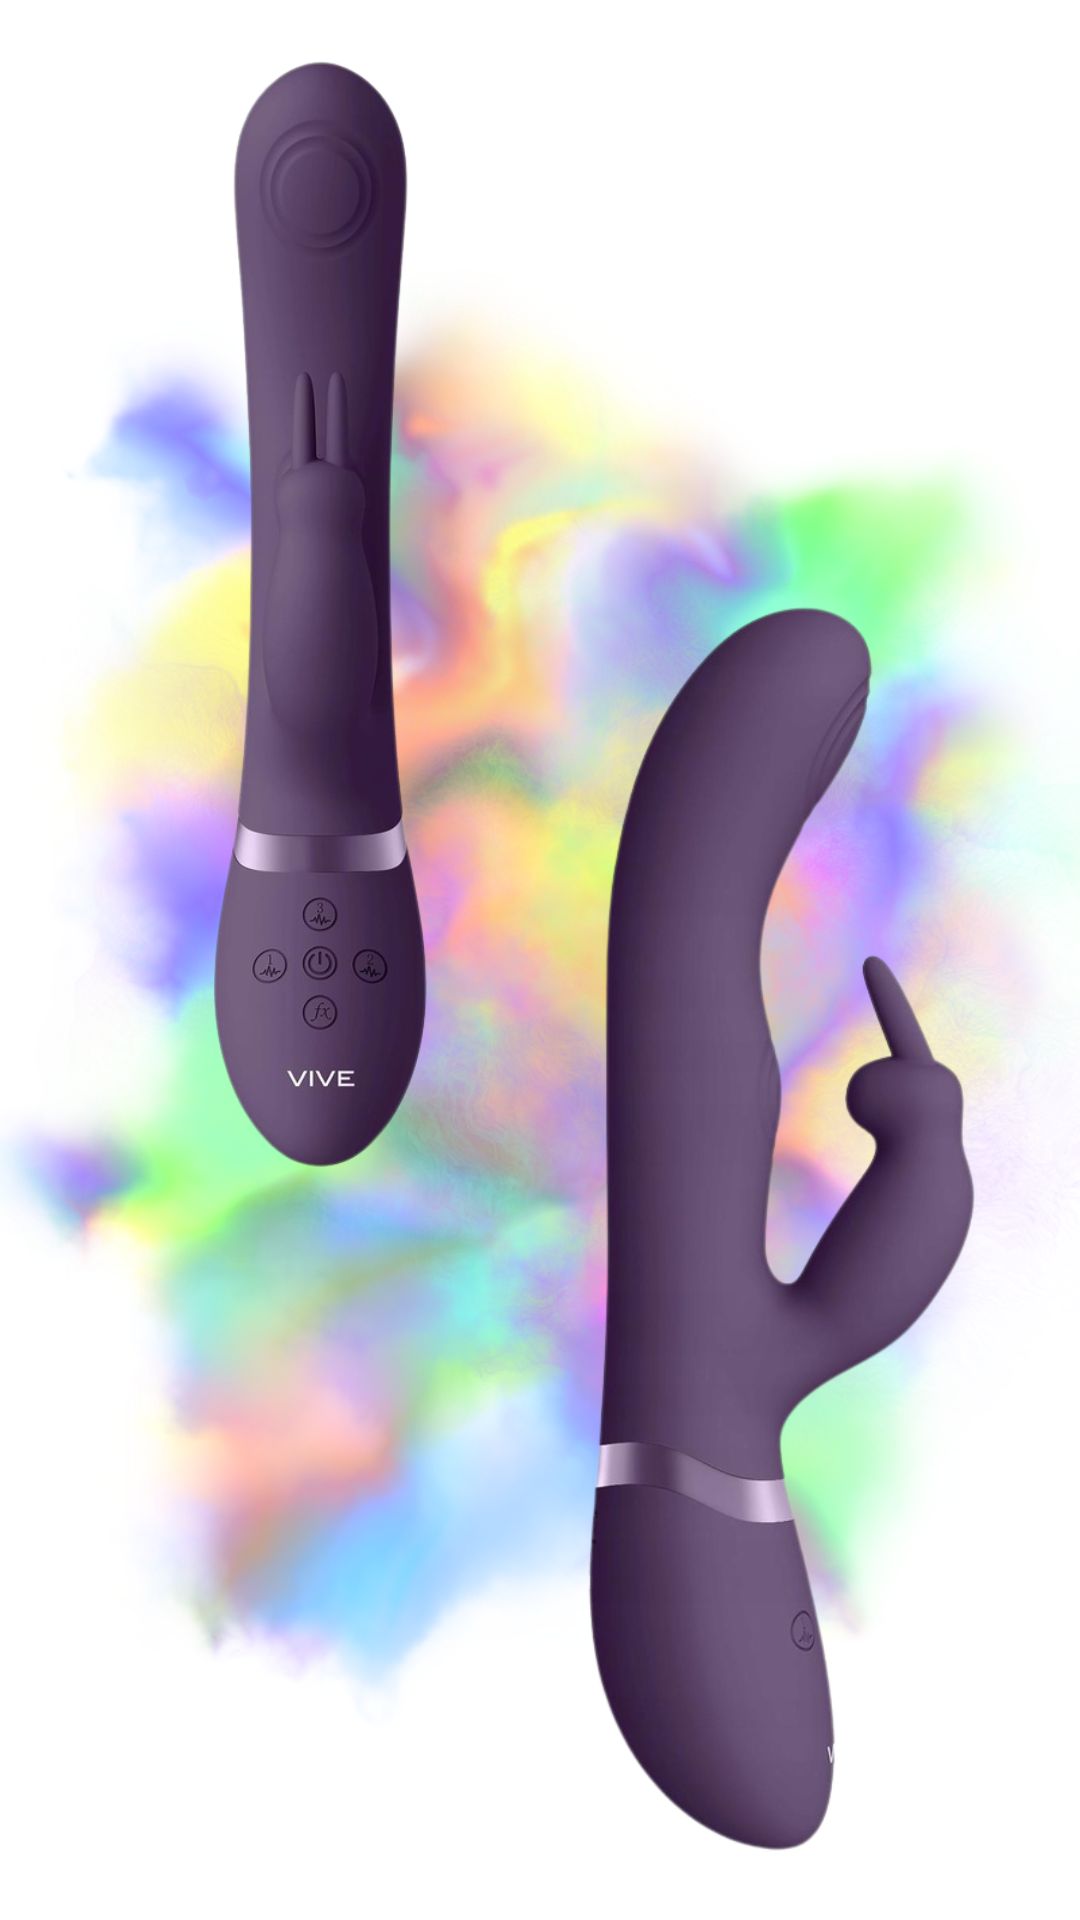 Dvigubas vibratorius "May" – Violetinis 
Gražaus dizaino "May" vibratorius idealiai tinka jaudinantiems žaidimams vienam arba su partneriu. 
  
Jūsų klitoriu pasirūpins zuikučio ausytės, kuris palaikys tinkamą vibraciją. Labai intensyvią vaginalinę stimuliaciją užtikrina kiti 2 galingi varikliukai - vienas impulsinis G taško stimuliacijai ir kitas vidinei klitorio stimuliacijai . Šie 3 varikliukai valdomi nepriklausomai, kiekvienas jų turi 10 greičių / funkcijų.   Su daugiau nei 1000 skirtingų kombinacijų šis žaislas nukels jus ten, kur net nesvajojote.  
  
Bet tai dar ne viskas.  Dvigubas vibratorius slepia dar vieną specialų mygtuką, kuris pravers, ypač prieš pat kulminaciją.  Jį paspaudus visi  varikliukai pradeda veikti maksimaliu pajėgumu, ir apima kvapą gniaužianti ekstazė, kurios nepatirsite su jokiu kitu vibratoriumi.  
  
Vibratorius yra atsparus vandeniui (IPX7), todėl ras savo pritaikymą net žaidžiant vandenyje. Paviršius  pagamintas iš malonaus silikono, kuris yra hipoalerginis  ir tinkamas naudoti su vandens pagrindo lubrikantais. Vibratorius "May" įkraunamas pridedamu magnetiniu  USB laidu, o visiškai įkrautas suteiks iki 60 minučių aistringų žaidimų.  
  
Tinkamai prižiūrint  šis vibratorius tarnaus tikrai ilgai. Prieš ir po kiekvieno naudojimo nuplaukite jį šiltu vandeniu ir švelniu muilu arba specialiu žaislų valikliu. Leiskite išdžiūti natūraliai. Šį sekso žaislą laikykite stalčiuje, specialiame maišelyje arba kitoje vietoje, kurioje nėra dulkių. Laikykite jį atokiau nuo kitų sekso žaislų. Nepalikite tiesioginiuose saulės spinduliuose ir niekada nelaikykite jo dideliame karštyje. 
  
Rekomenduojama naudoti kartu su vandens pagrindo lubrikantu.  Nenaudokite silikoninių lubrikantų, aliejų ar kremų, nes jie gali sugadinti prietaiso medžiagą ir apriboti jo veikimą bei galiojimo laiką.  
Dvigubo vibratoriaus naudojimo būdai:  
Kai kurios moterys naudoja dvipusius vibratorius seksui su antrąja moterimi. Dildo dvigubas galas leidžia vienu metu prasiskverbti į dvi makštis.  
Nuo makšties iki išangės. Dauguma dvigubo įsiskverbimo dildo yra skirti tuo pačiu metu stimuliuoti išangės ir makšties erogenines zonas, tačiau pailgintų dvigubų vibratorių atveju du partneriai gali naudoti tą patį žaisliuką vienu metu.   
Išangė į išangę. Dauguma dvipusių dildo gali būti naudojami abiejų partnerių analiniam įsiskverbimui.  
Imituojamą oralinį seksą taip pat galima atlikti su dvipusiu vibratoriumi.  
  Kodėl jums reikalingas vibratorius? 
Vibratorius ar klasikinis vibratorius yra sekso žaislas, naudojamas ant kūno maloniai seksualinei stimuliacijai kelti. 
Vibratoriai gali būti naudojami tiek solo, tiek poroje ar kelių žmonių žaidimams kartu. Taip pat jie gali būti naudojami erogeninėms zonoms, tokioms kaip klitoris, vulva ar makštis, varpa, kapšelis ar išangė, siekiant seksualiai stimuliuoti, išlaisvinti seksualumą ir pasiekti orgazmą. 
Vibratoriai yra rekomenduojami sekso terapeutų moterims, kurioms sunku pasiekti orgazmą masturbacijos ar lytinių santykių metu.